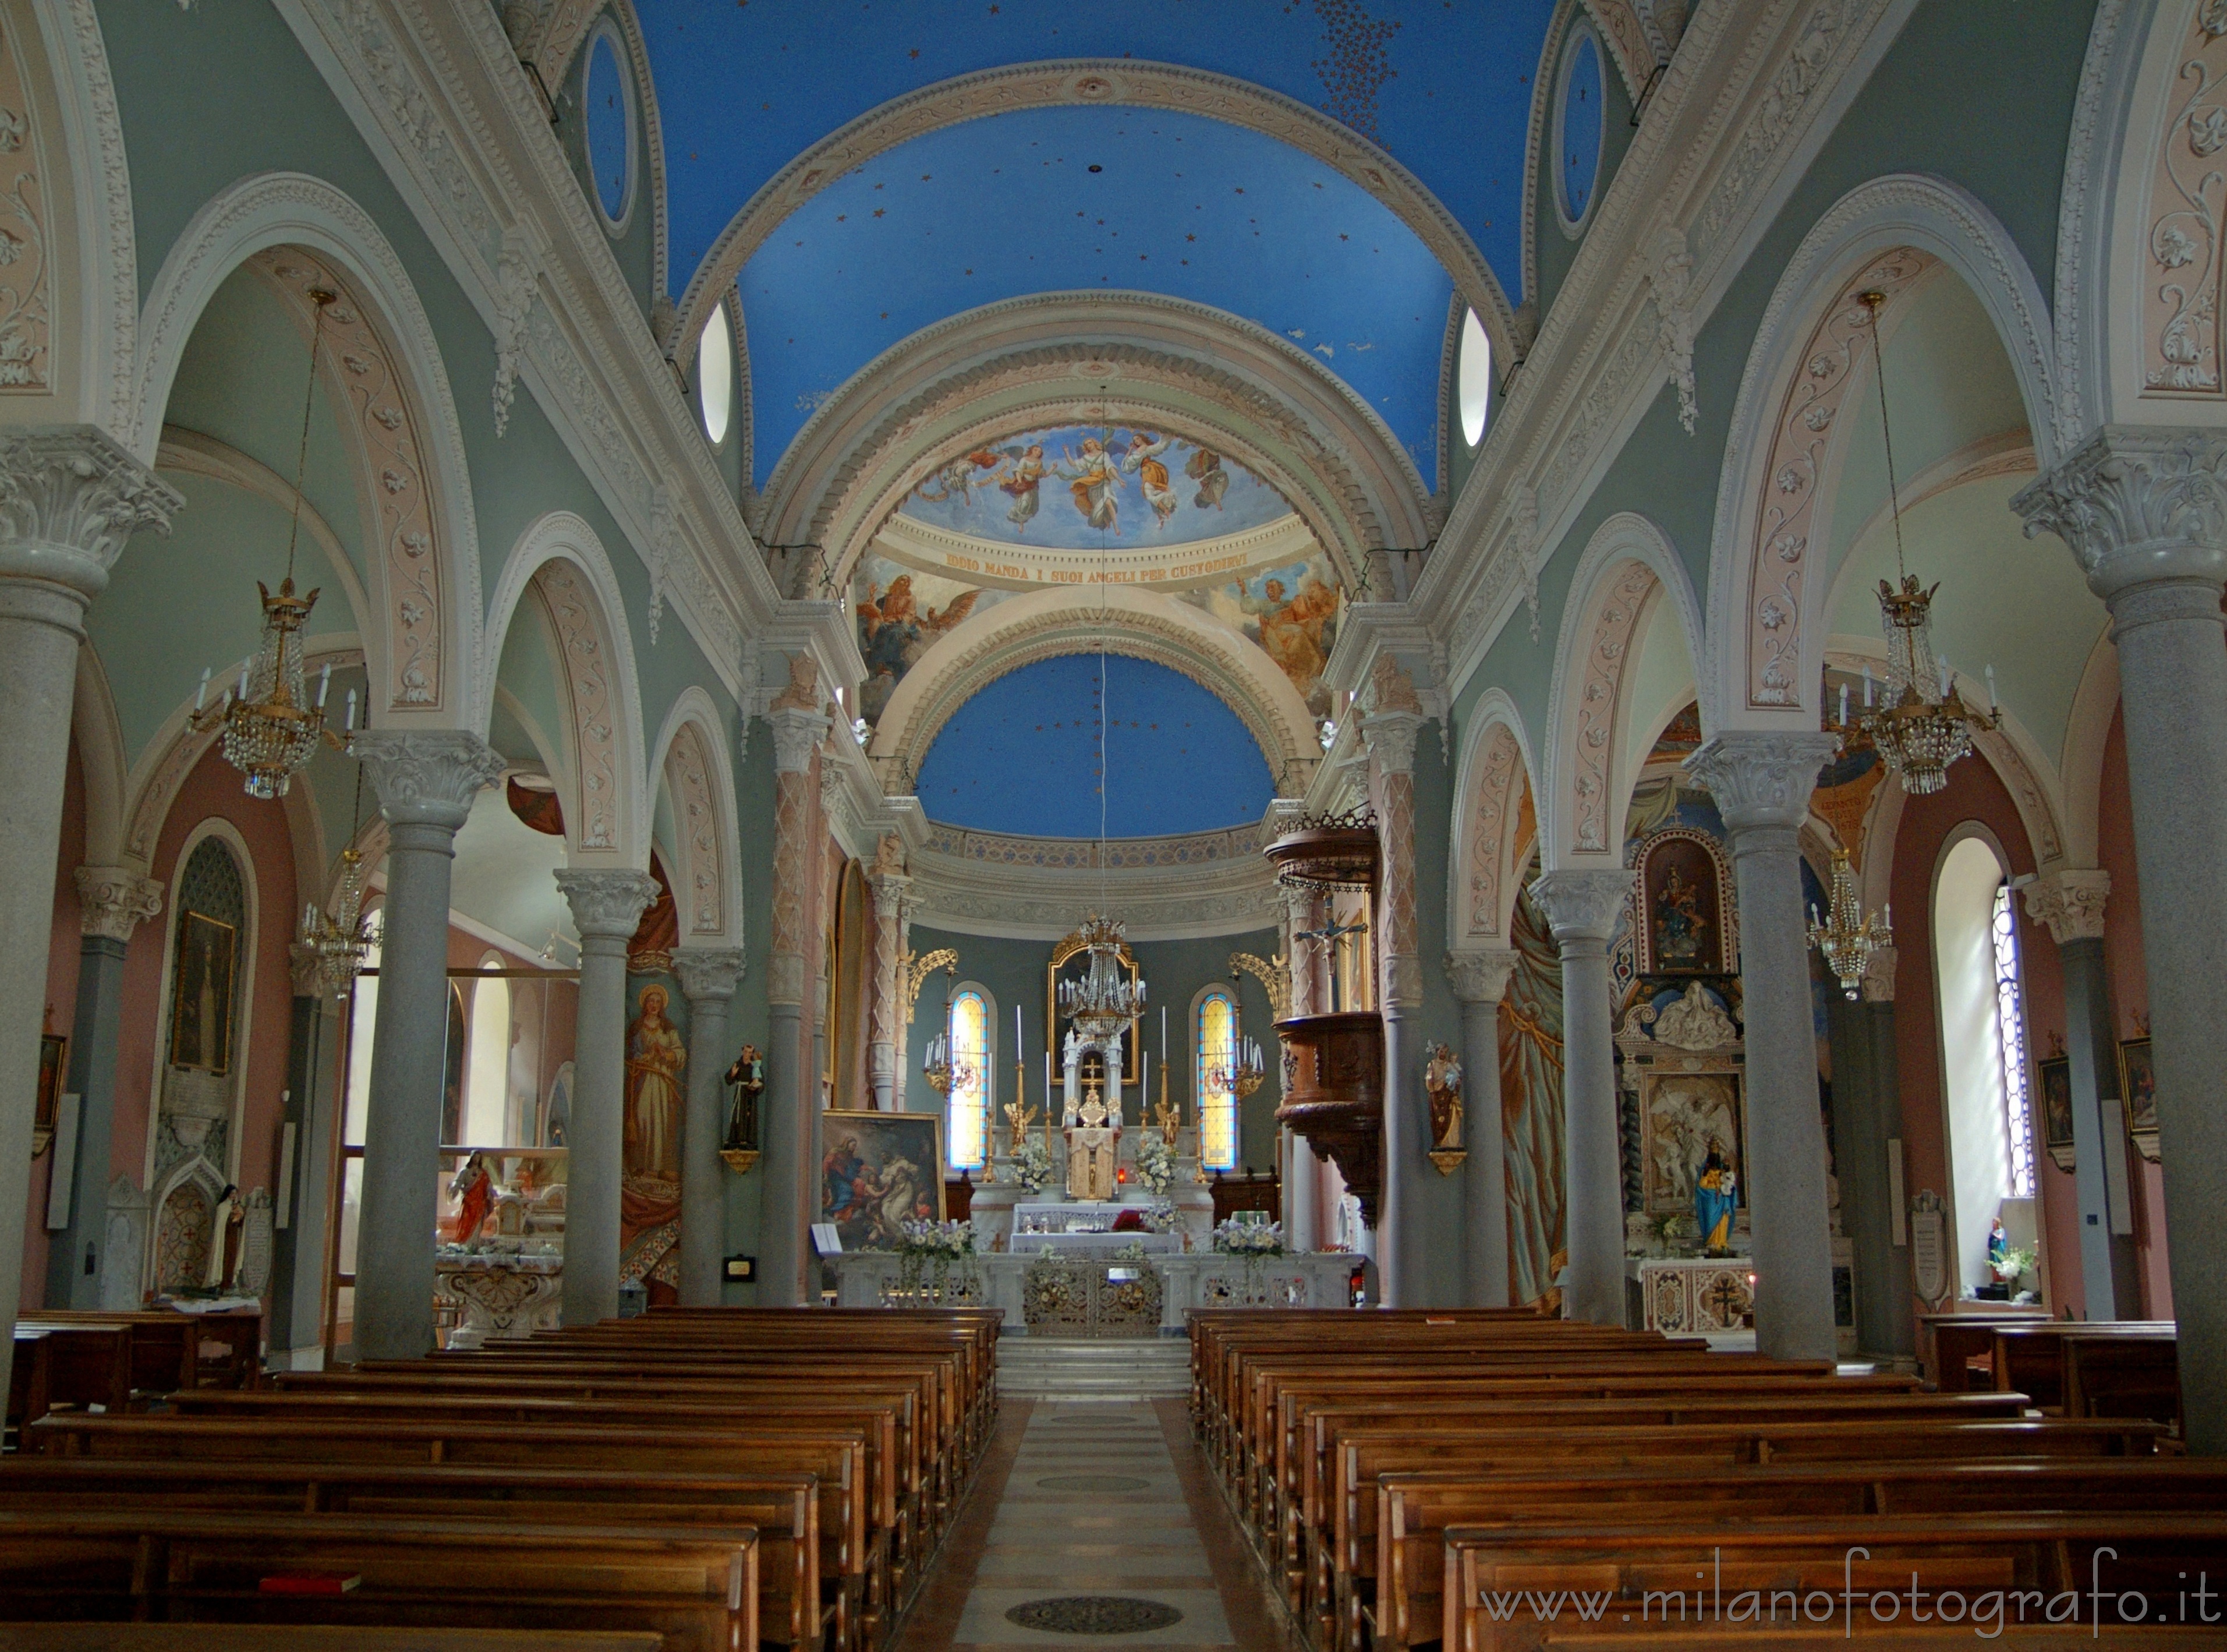 Rosazza (Biella): La chiesa di Rosazza - Rosazza (Biella)